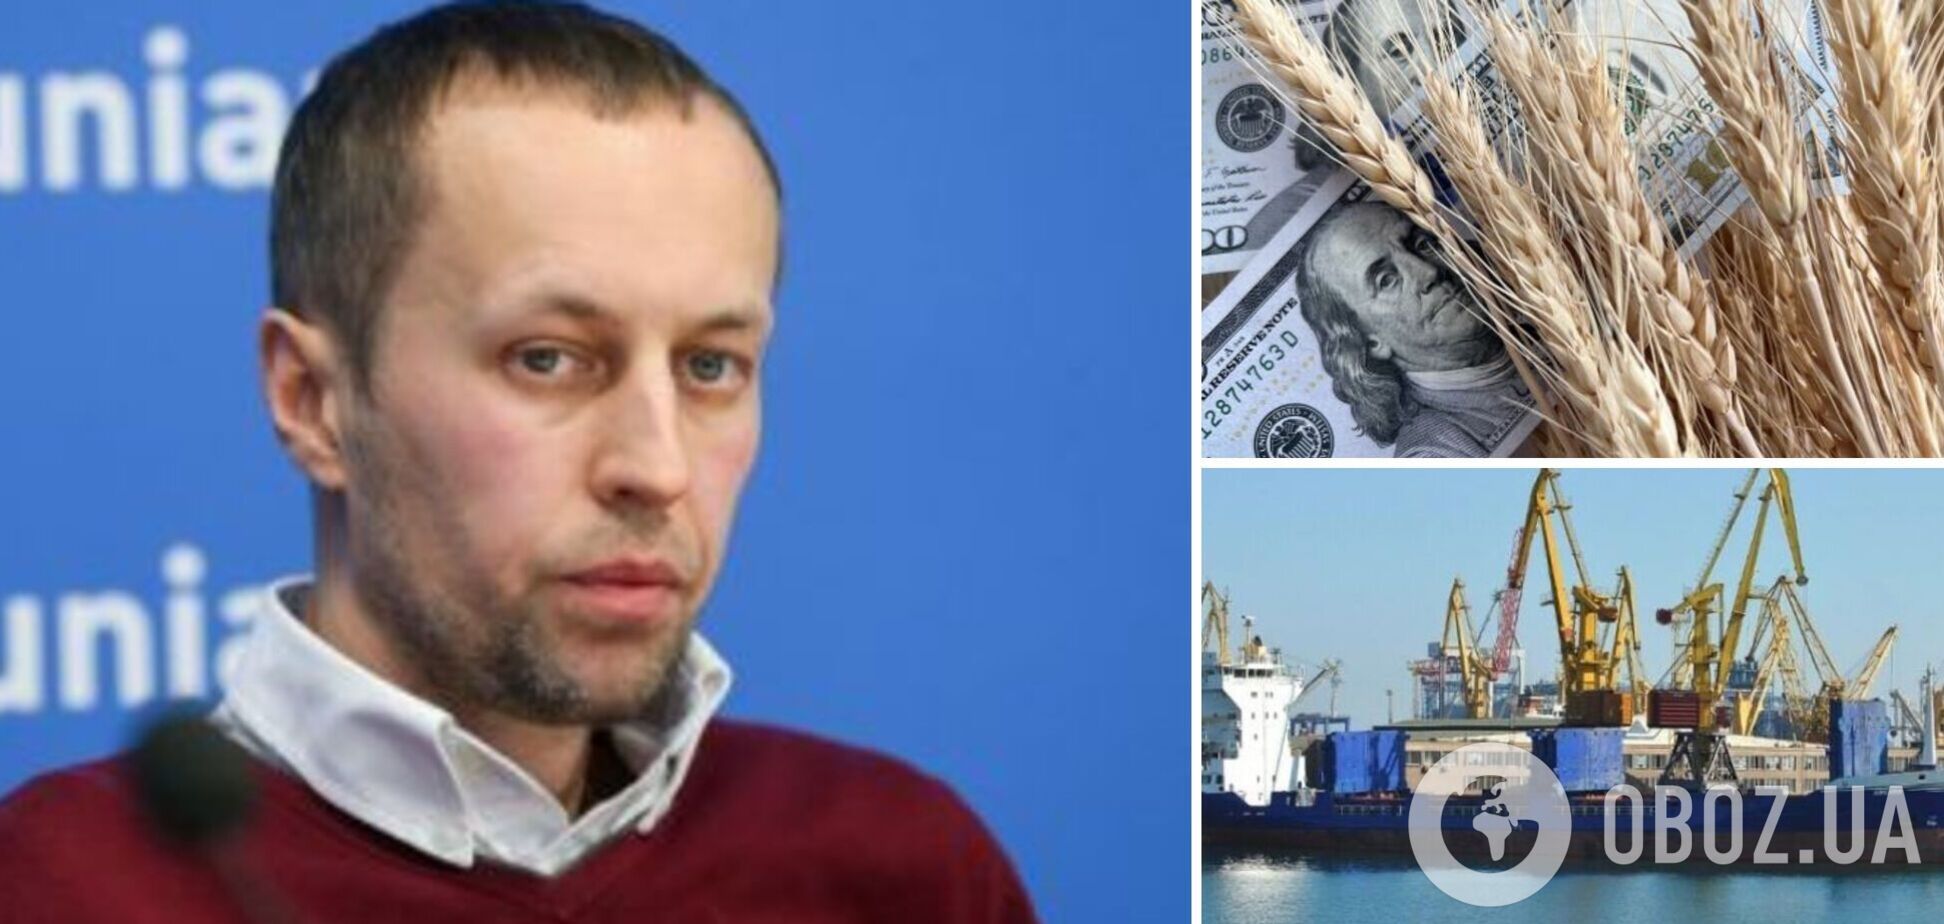 Разблокировка портов даст Украине более 16 млрд грн поступлений ежемесячно, – Забловский